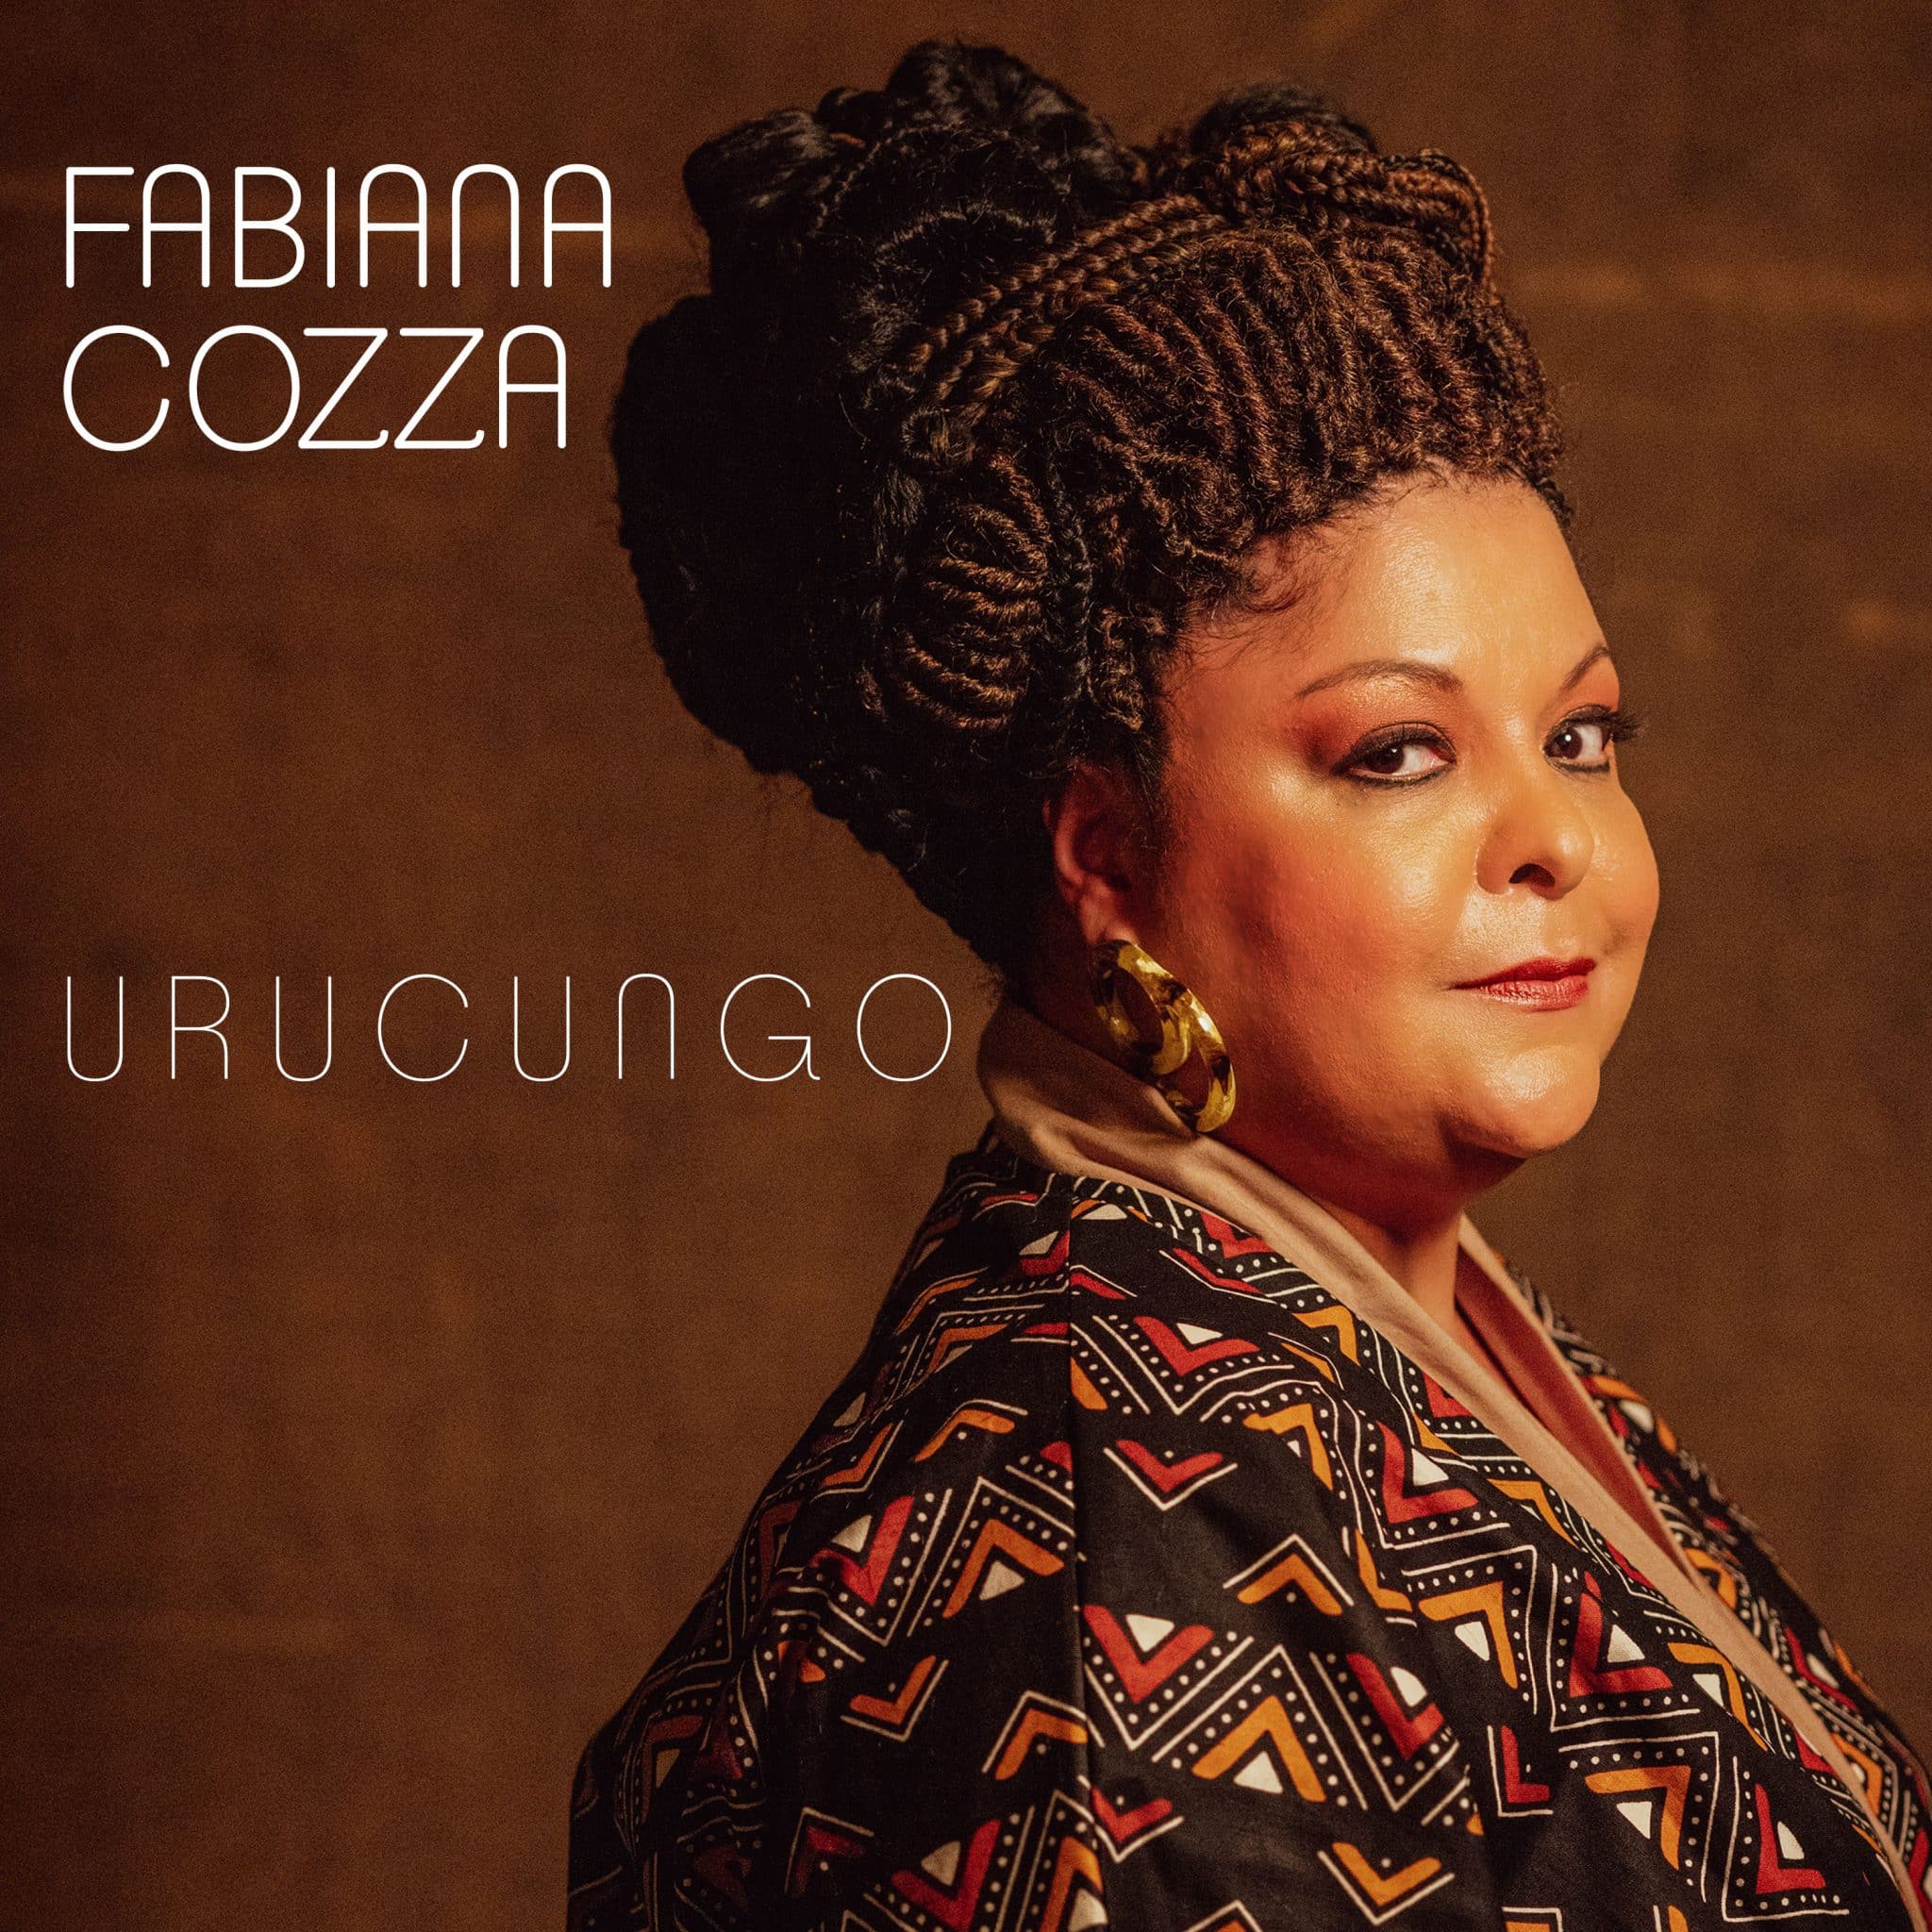 revistaprosaversoearte.com - Fabiana Cozza lança álbum 'Urucungo' com inéditas de Nei Lopes